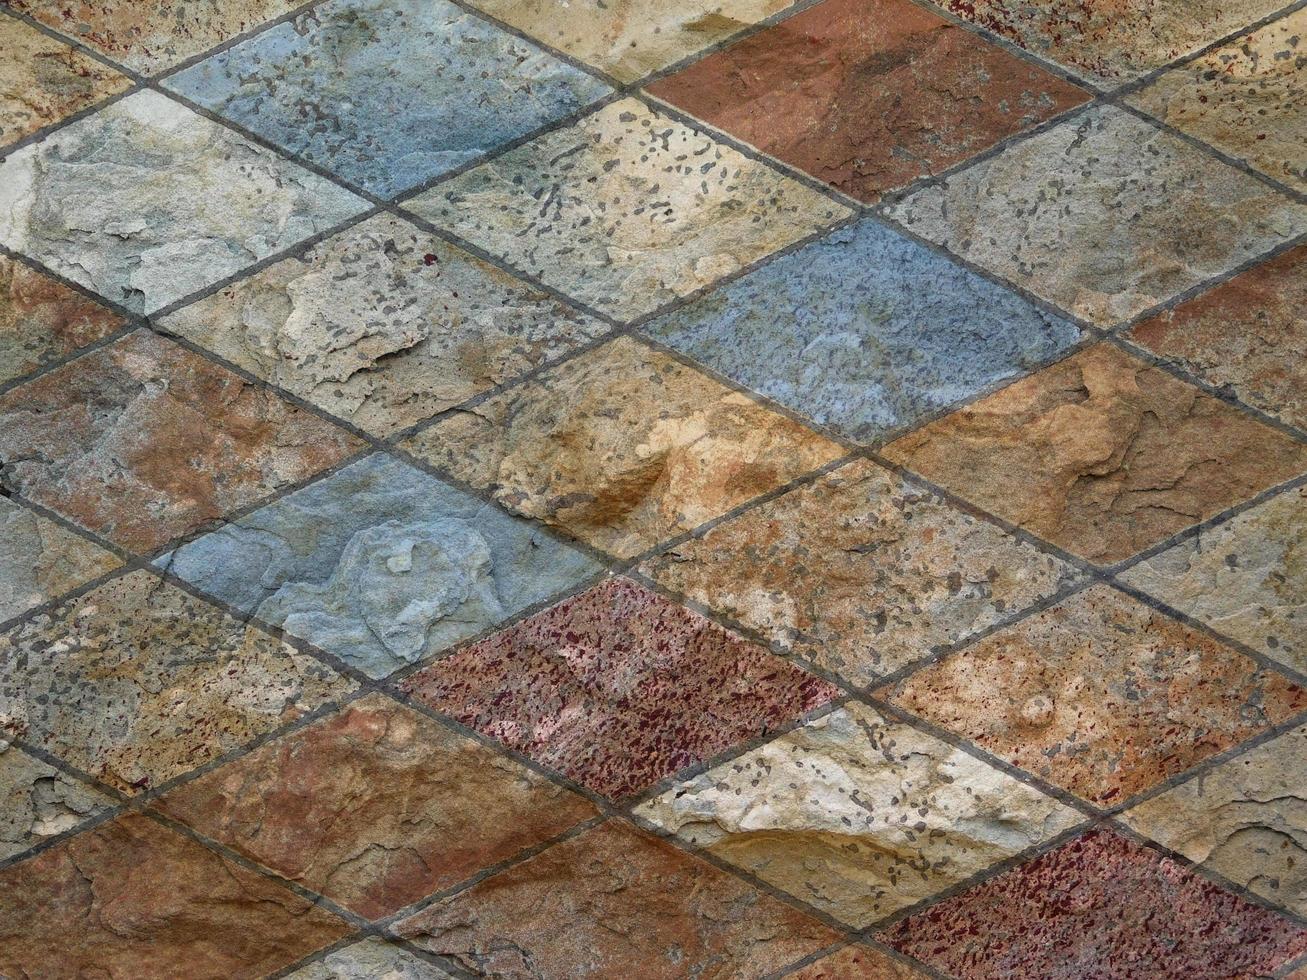 textura de piedra al aire libre foto